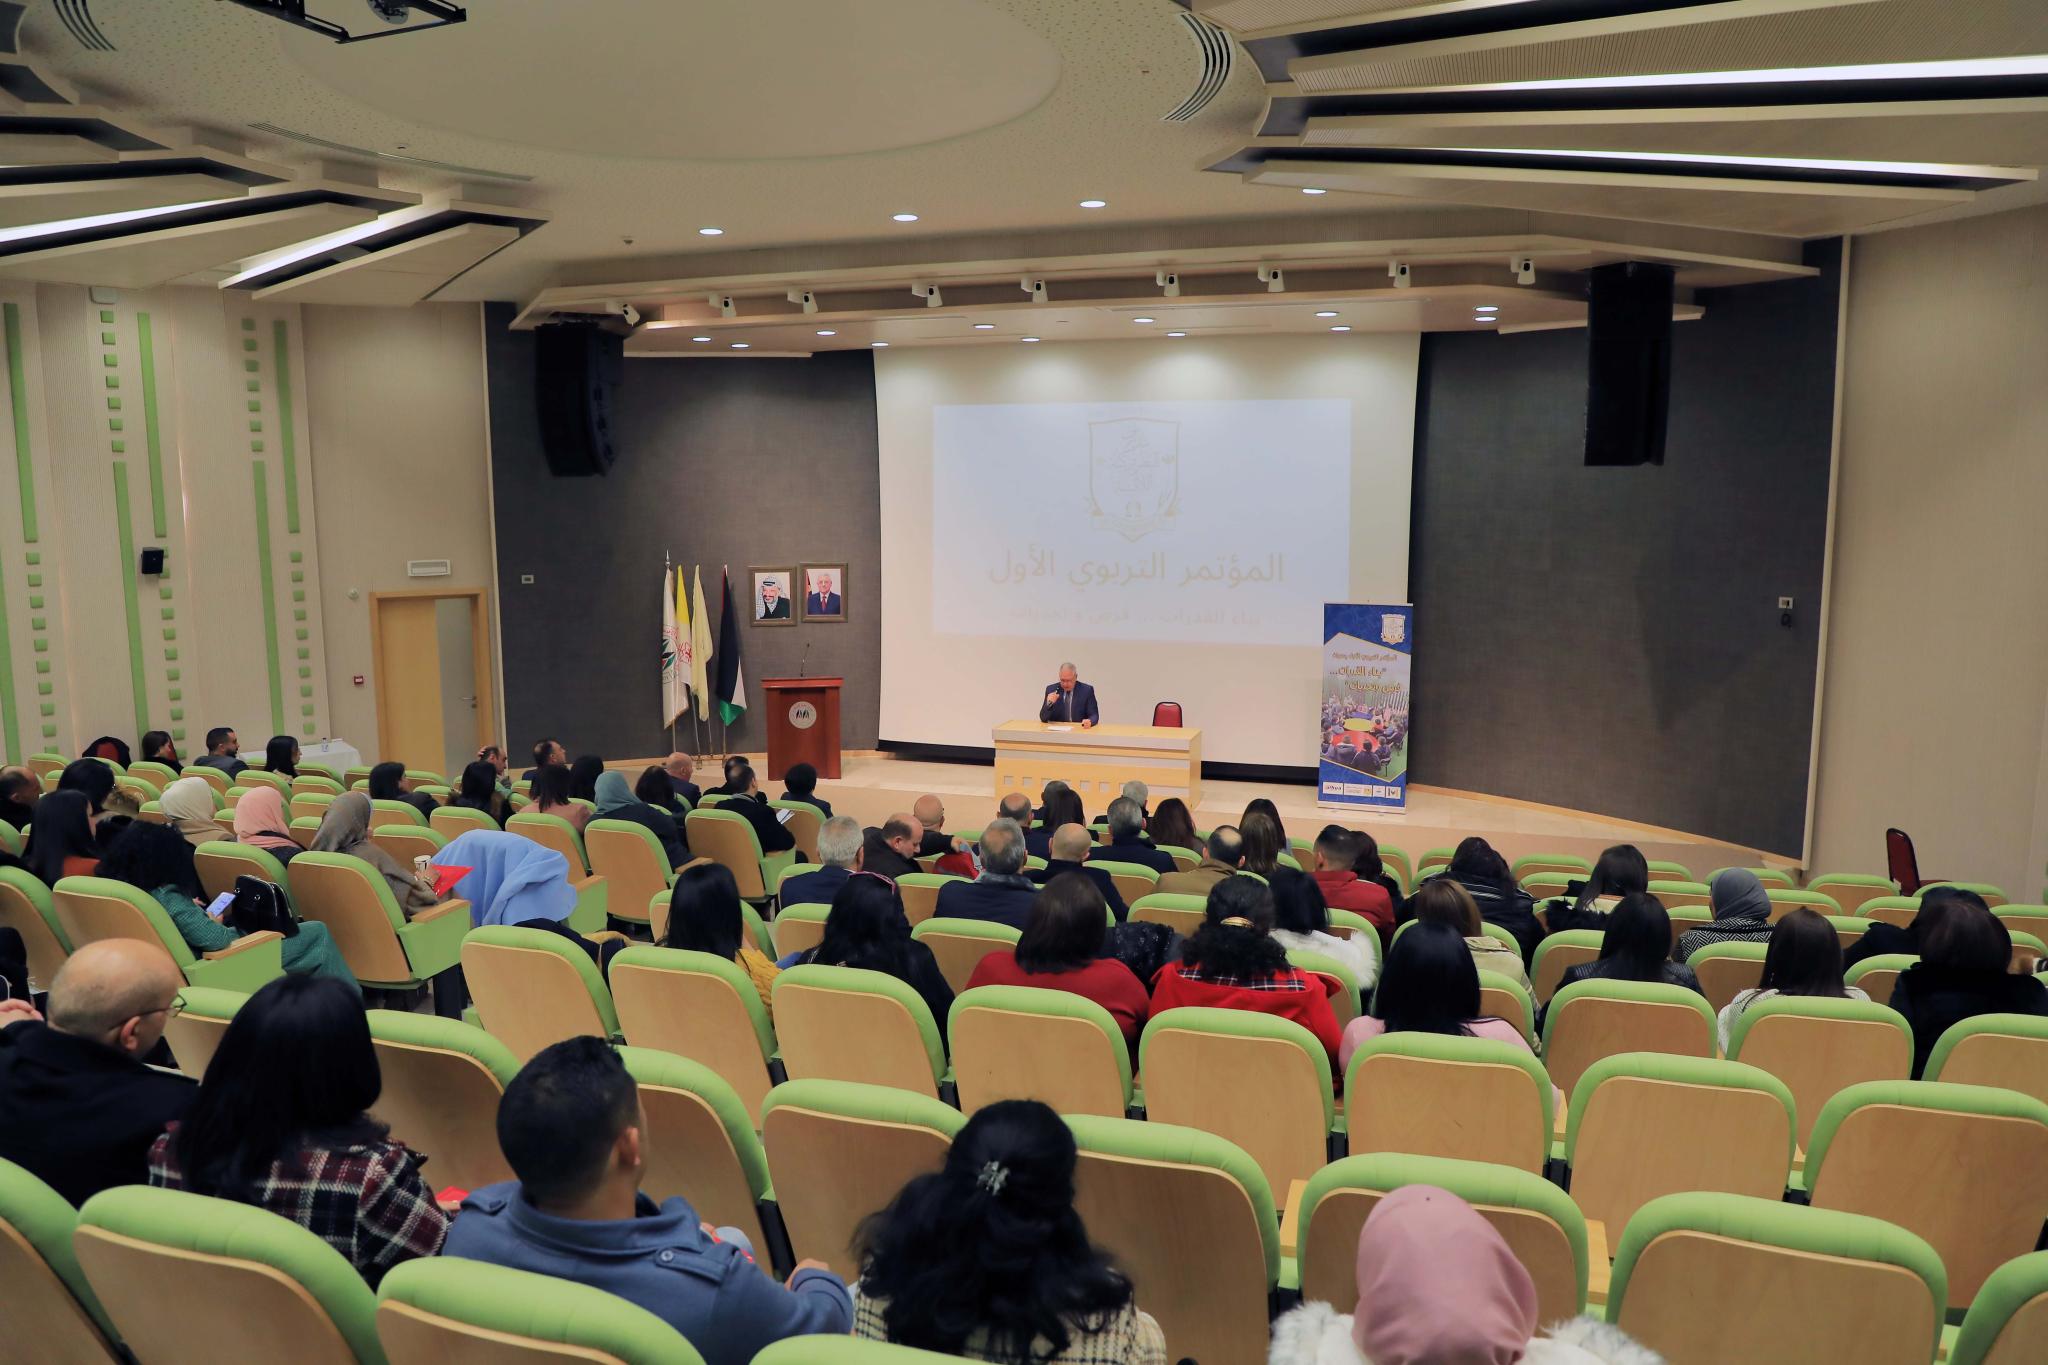 الجامعة حرم رام الله تستضيف المؤتمر التربوي الأول لمدارس البطريركية اللاتينية